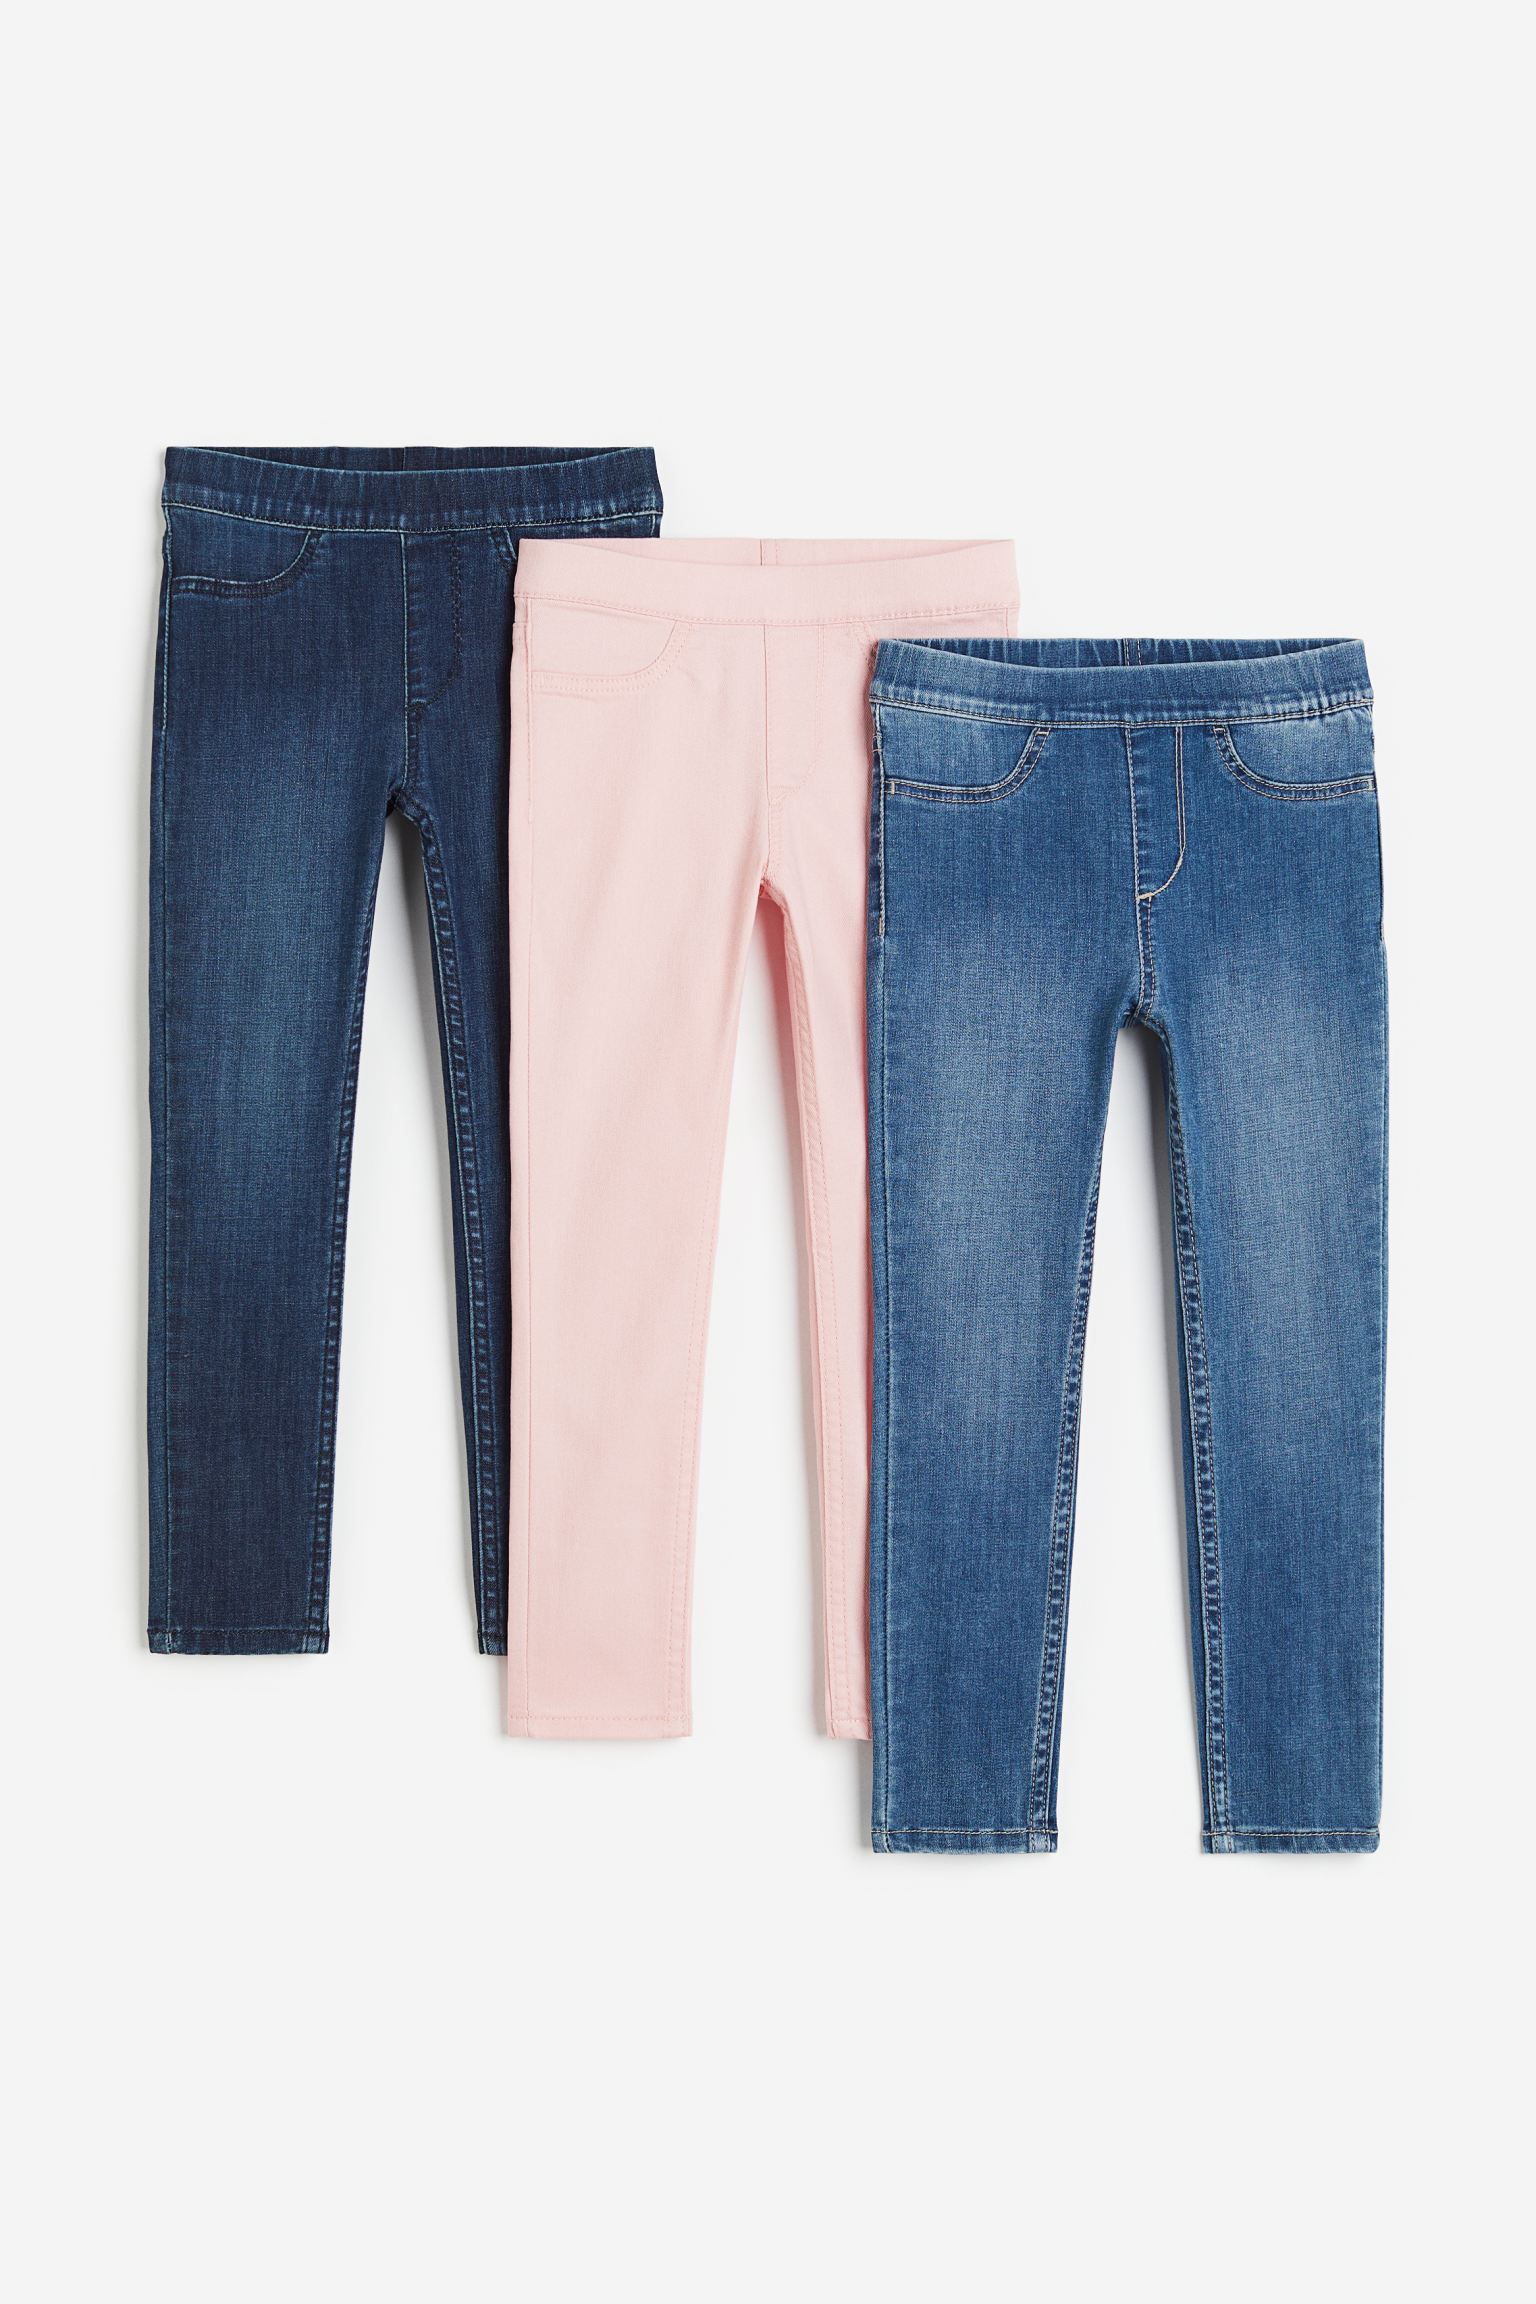 3 пары джинсовых джеггинсов H&M 128 синий/светло-розовый (доставка из-за рубежа)